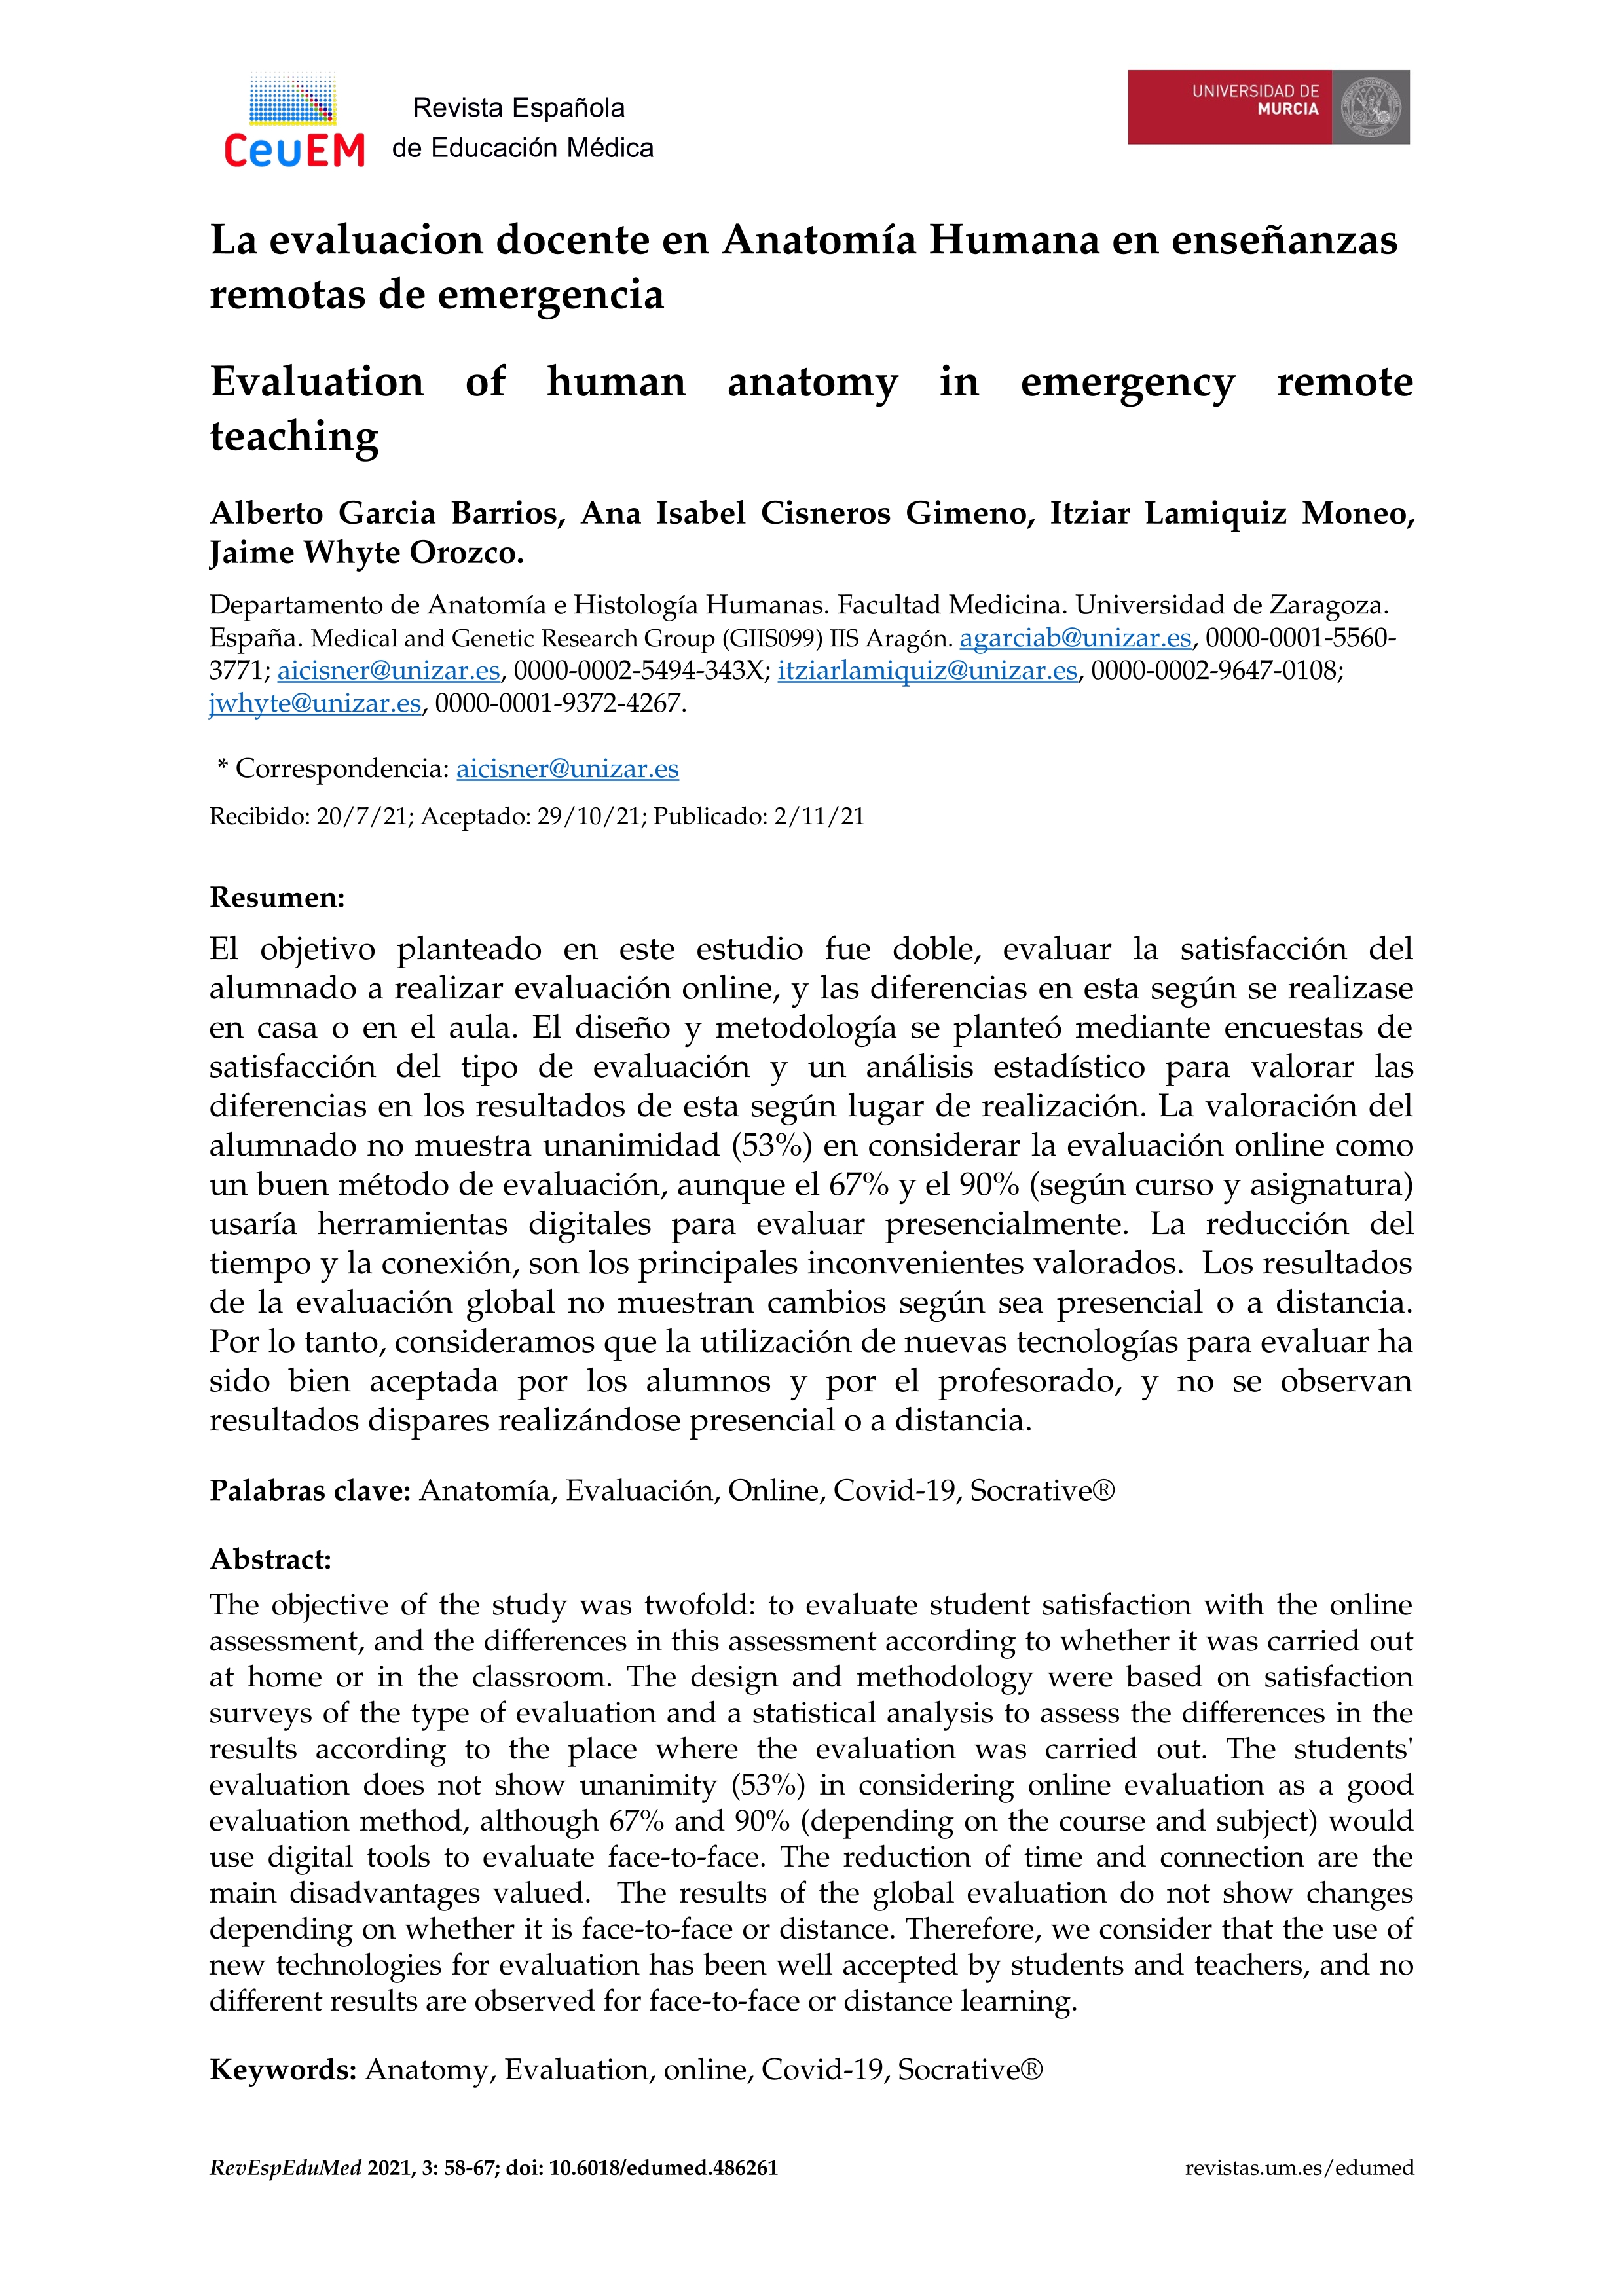 La evaluacion docente en Anatomía Humana en enseñanzas remotas de emergencia